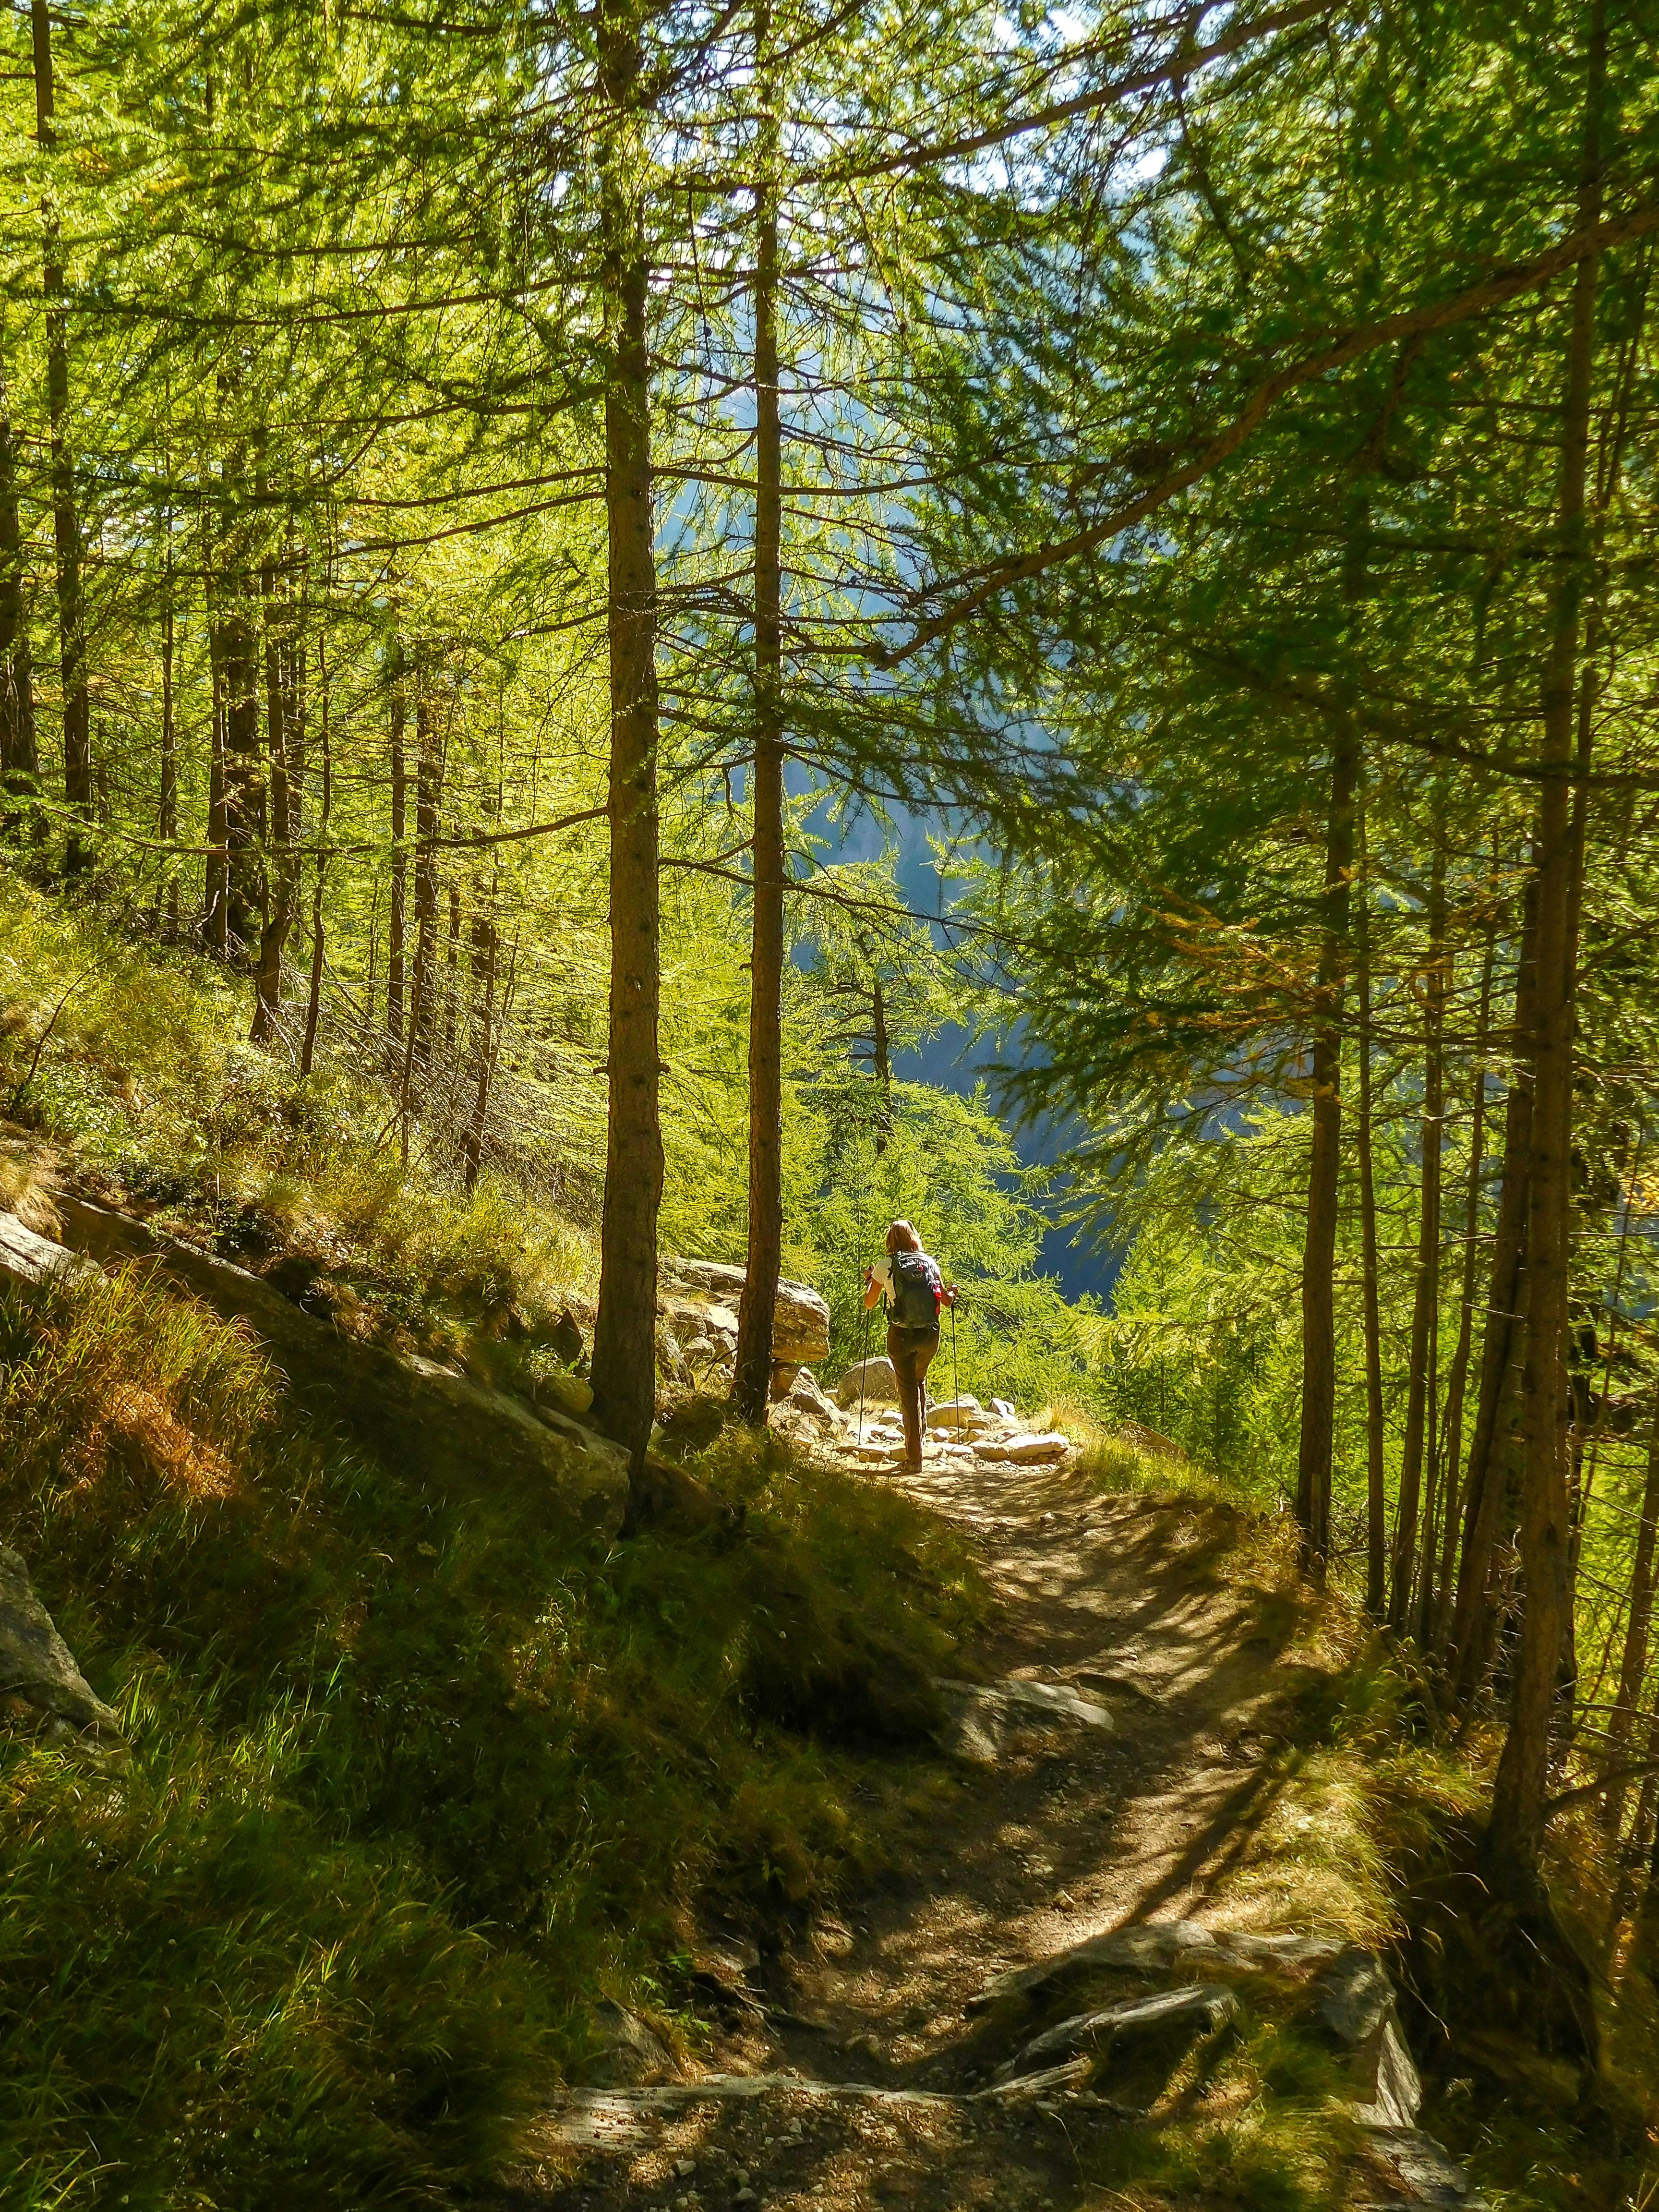 A hiker walks down a tree-lined trail